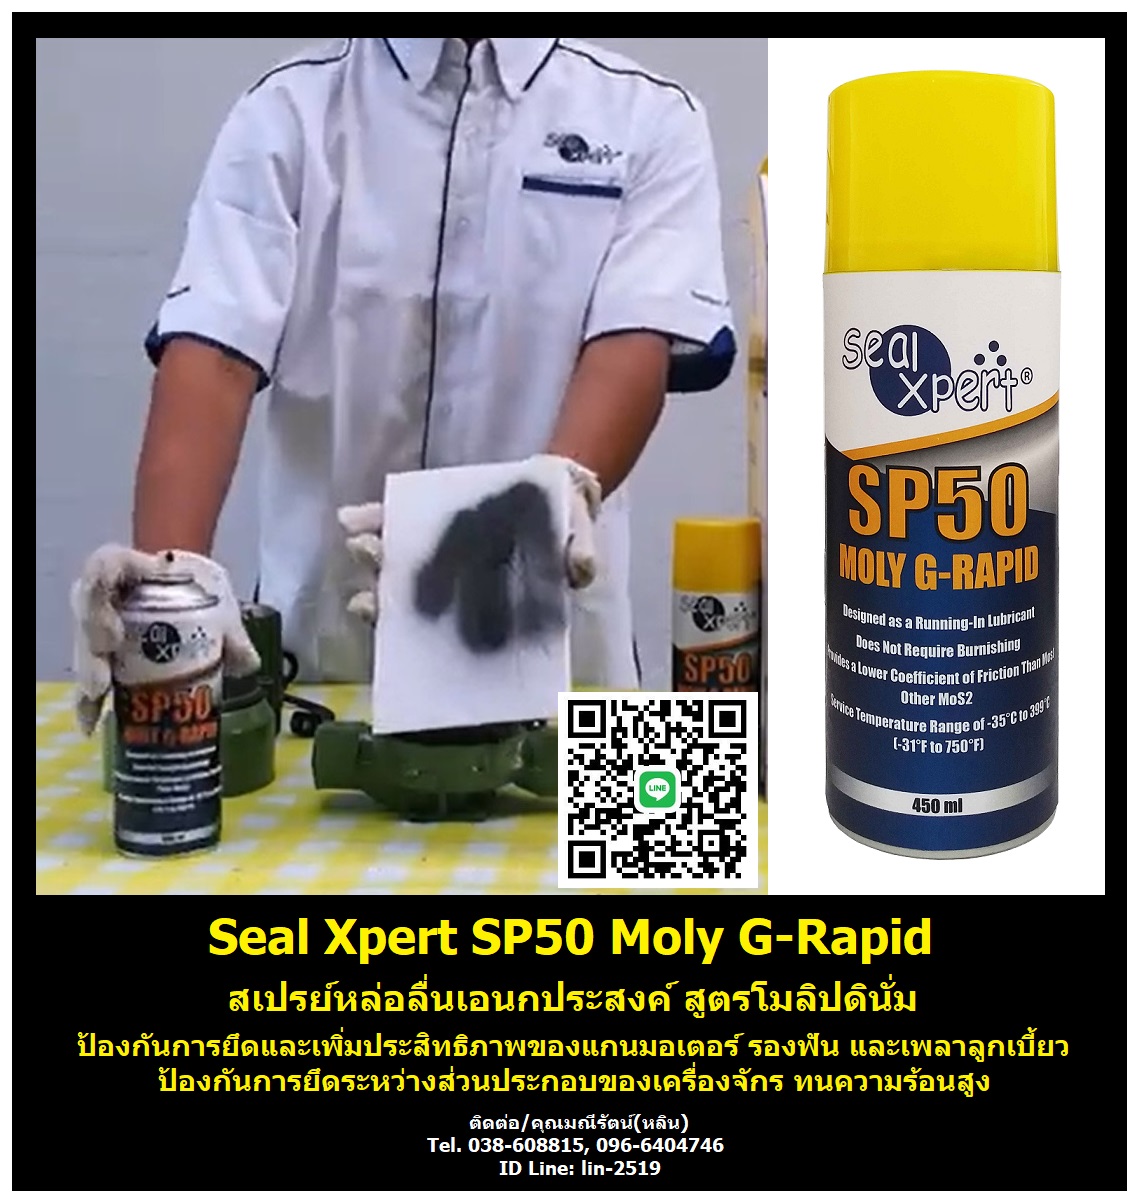 รูปภาพ Seal Xpert SP50 Moly G-Rapid สเปรย์หล่อลื่นสูตรโมลิดินั่มซัลไฟด์ (โมลี่) ชนิดฟิล์มแห้ง แห้งไว แรงยึดเกาะสูง ป้องกันการยึดและเพิ่มประสิทธิภาพของแกนมอเตอร์